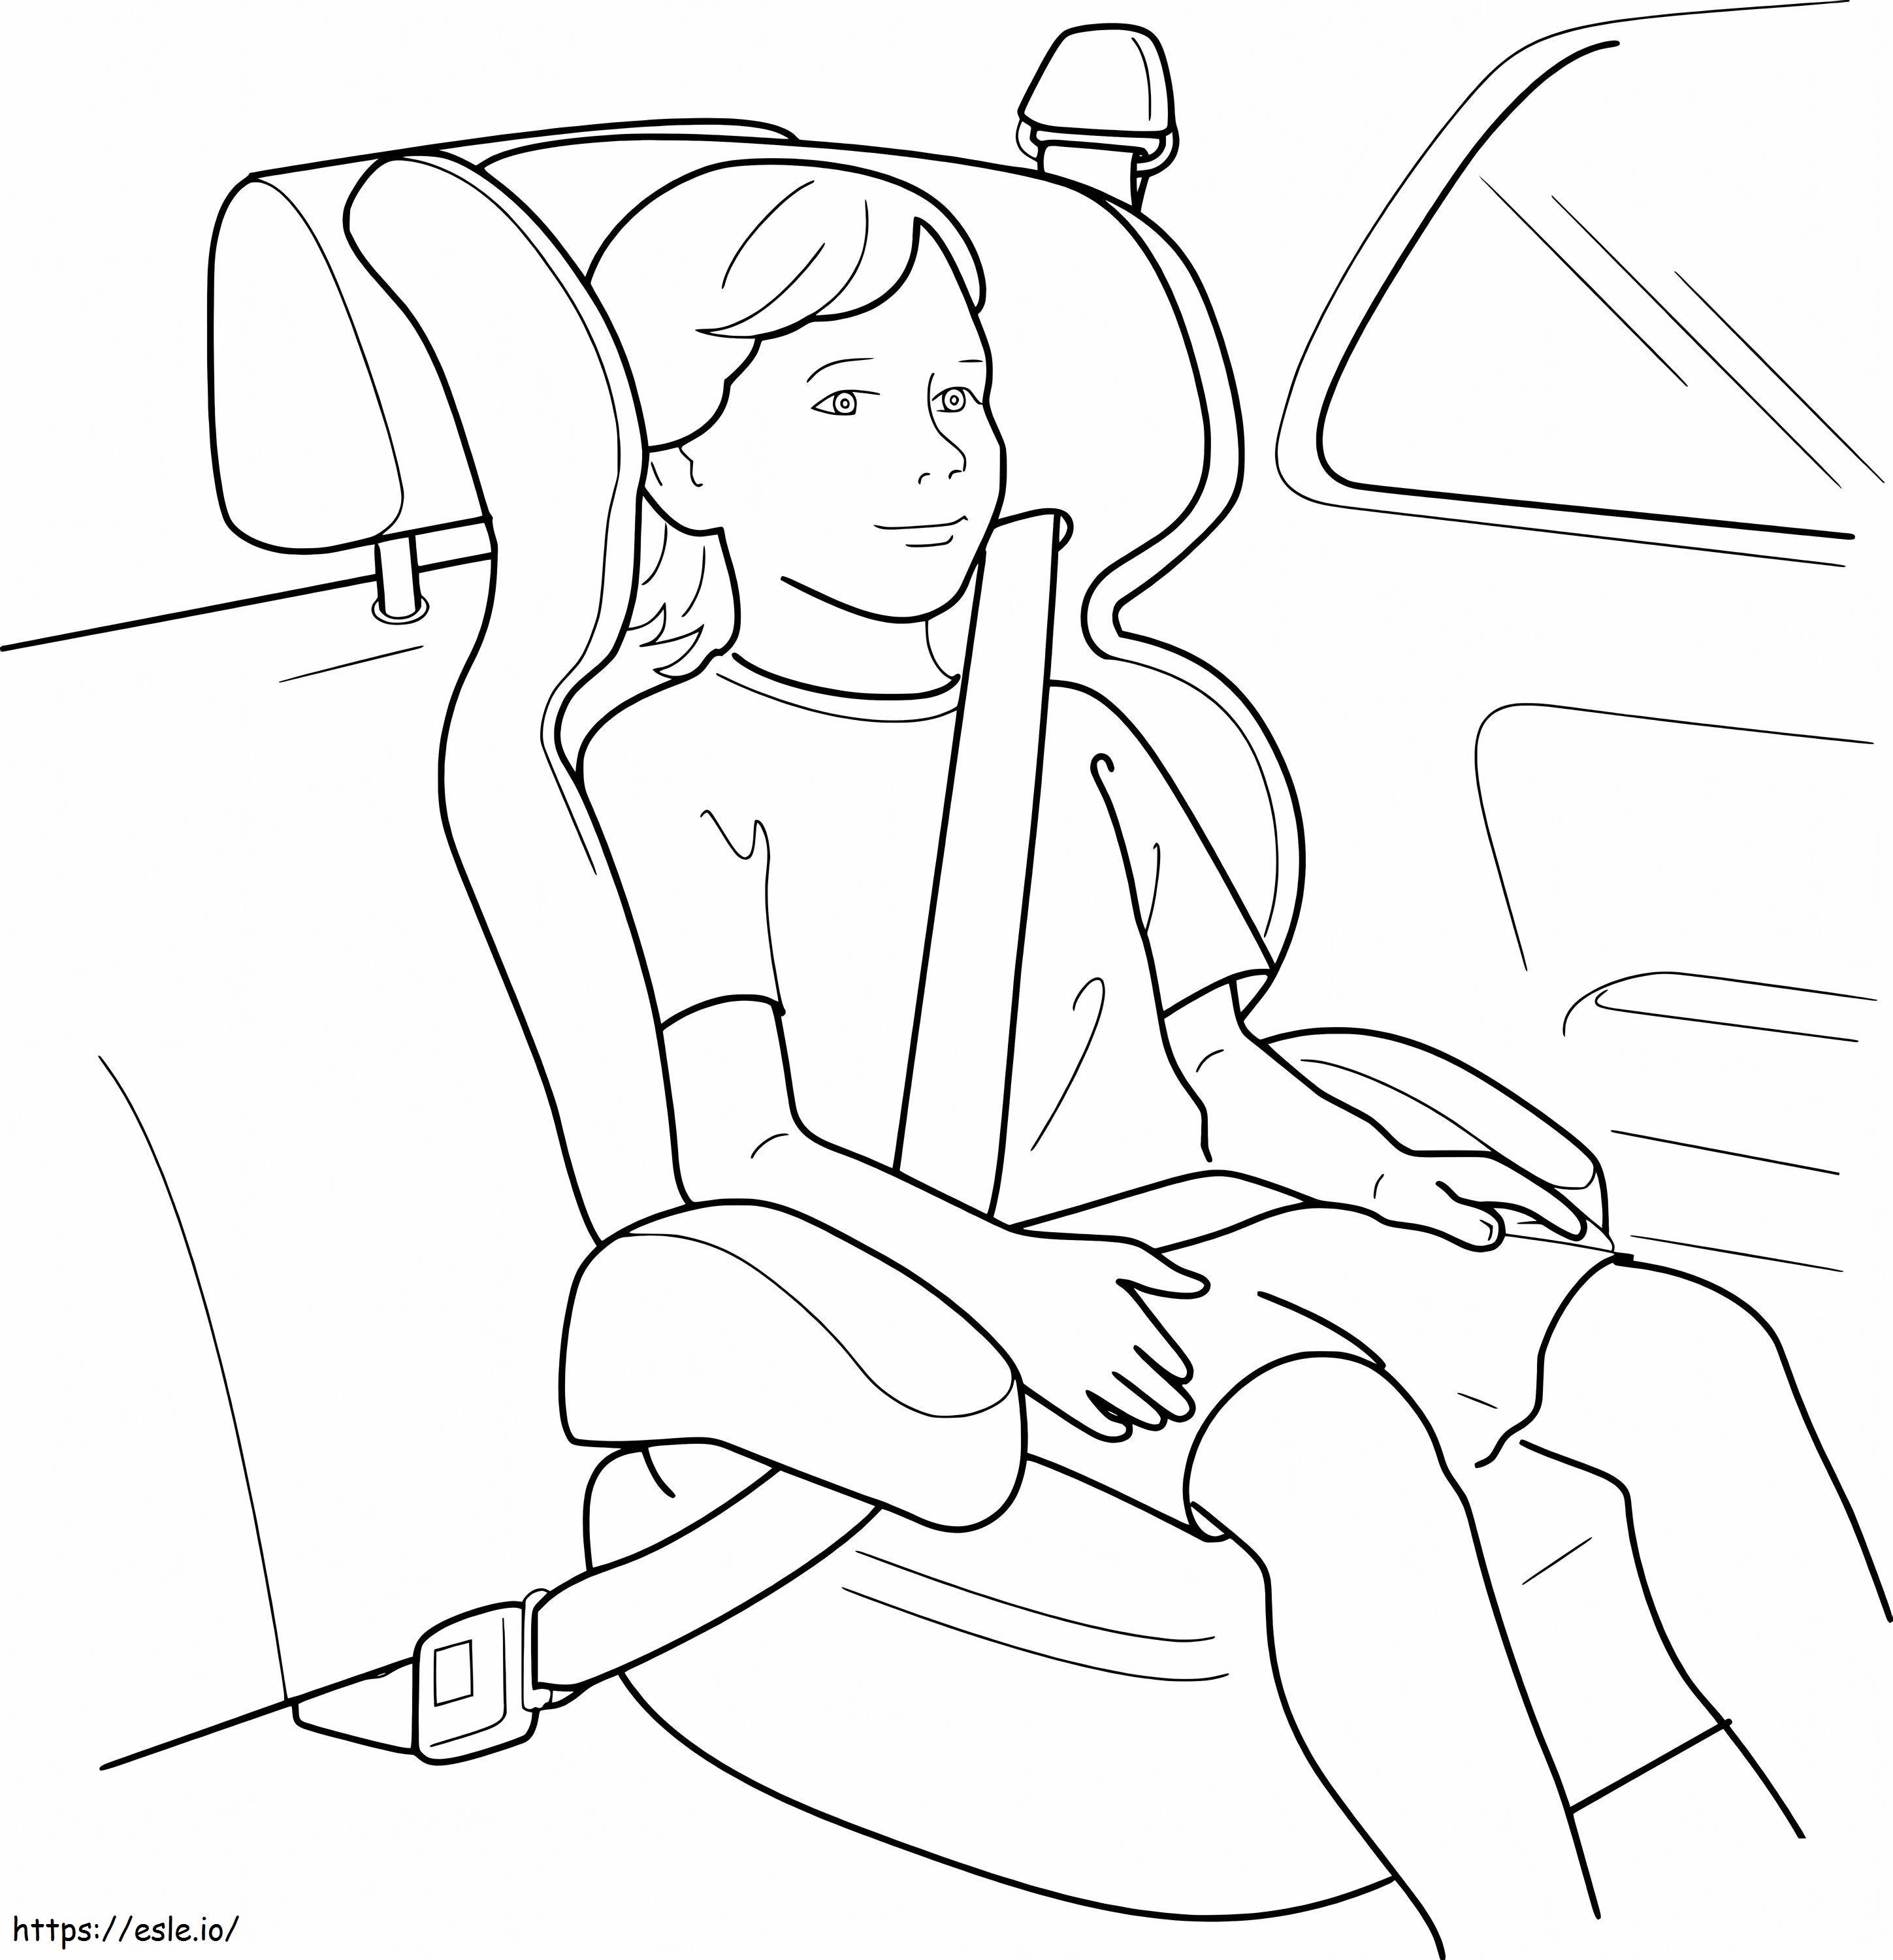 Zapnij pas bezpieczeństwa dla bezpieczeństwa dziecka w samochodzie kolorowanka